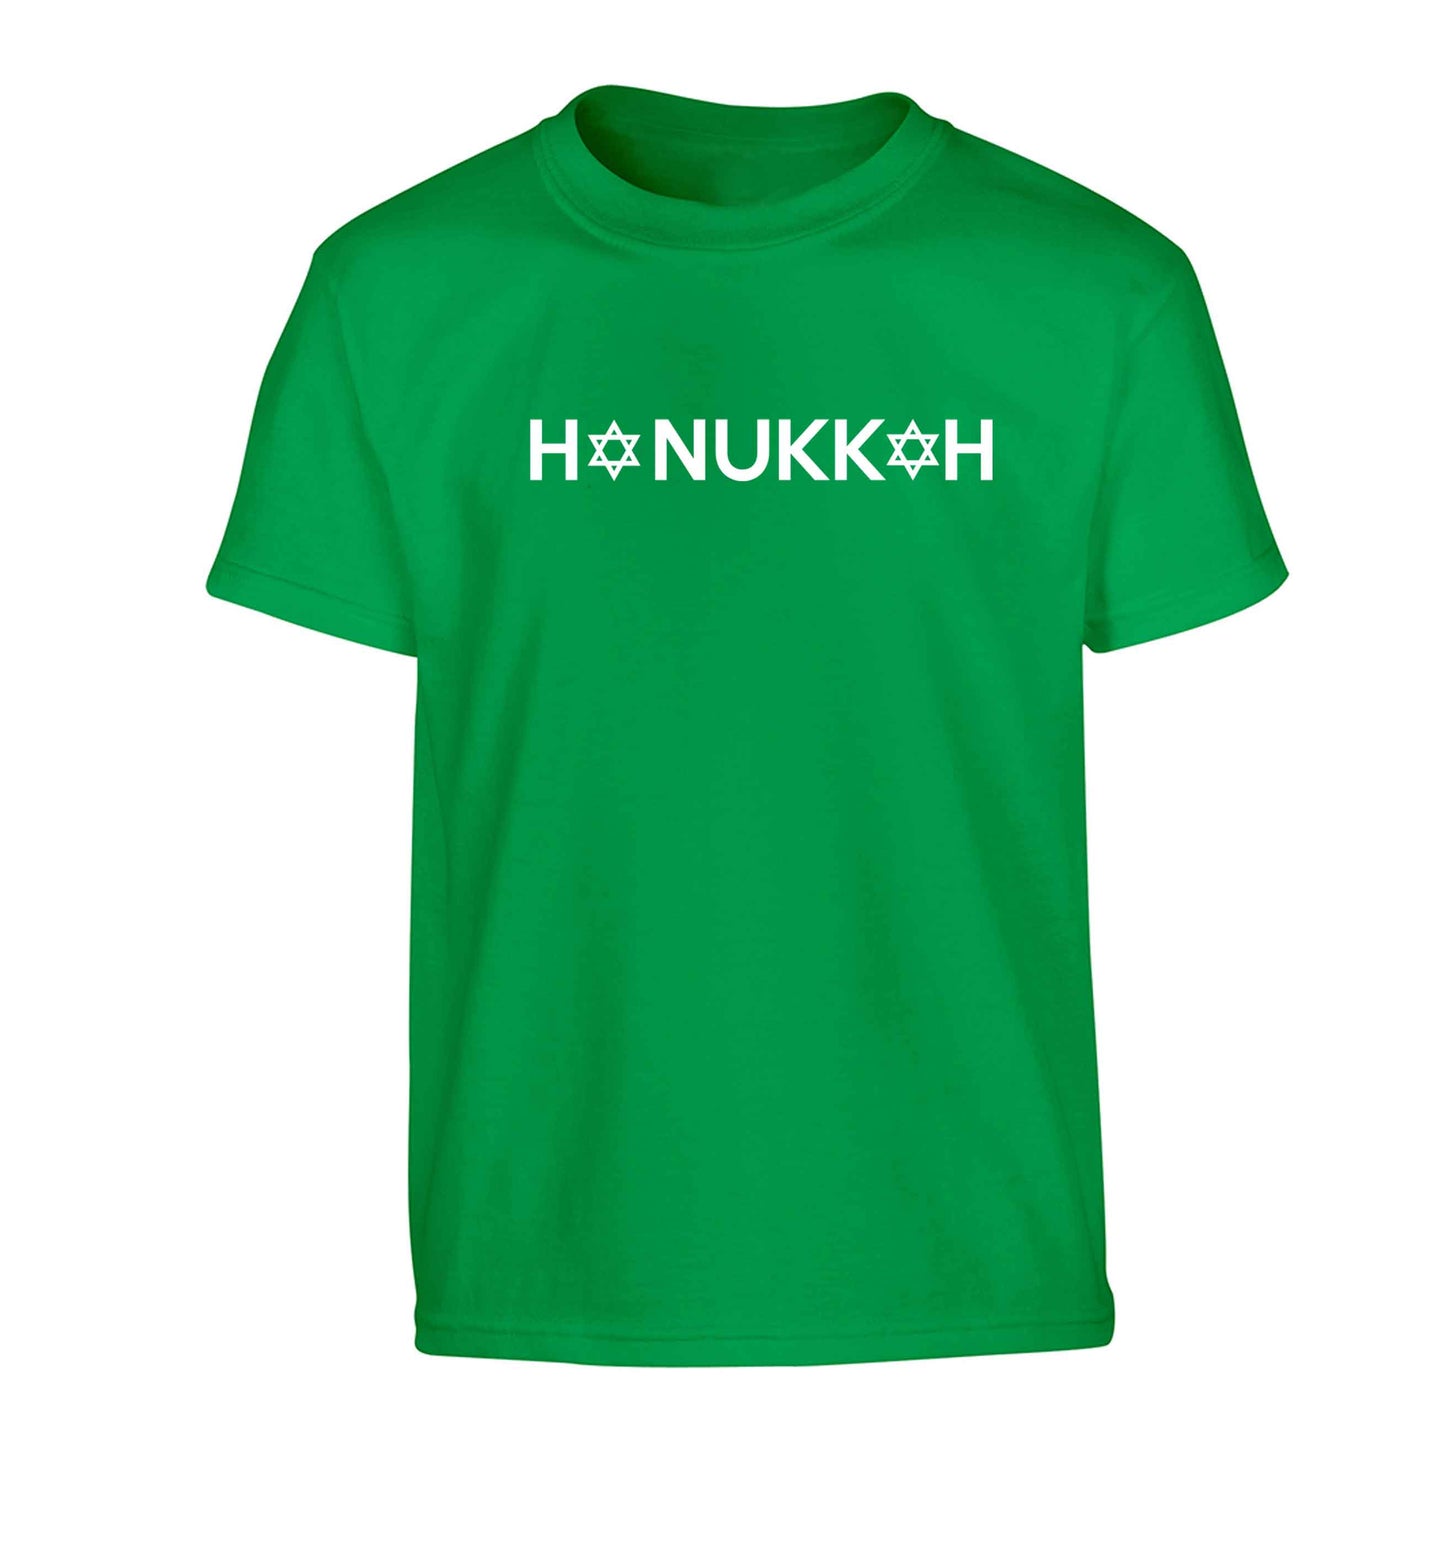 Hanukkah star of david Children's green Tshirt 12-13 Years